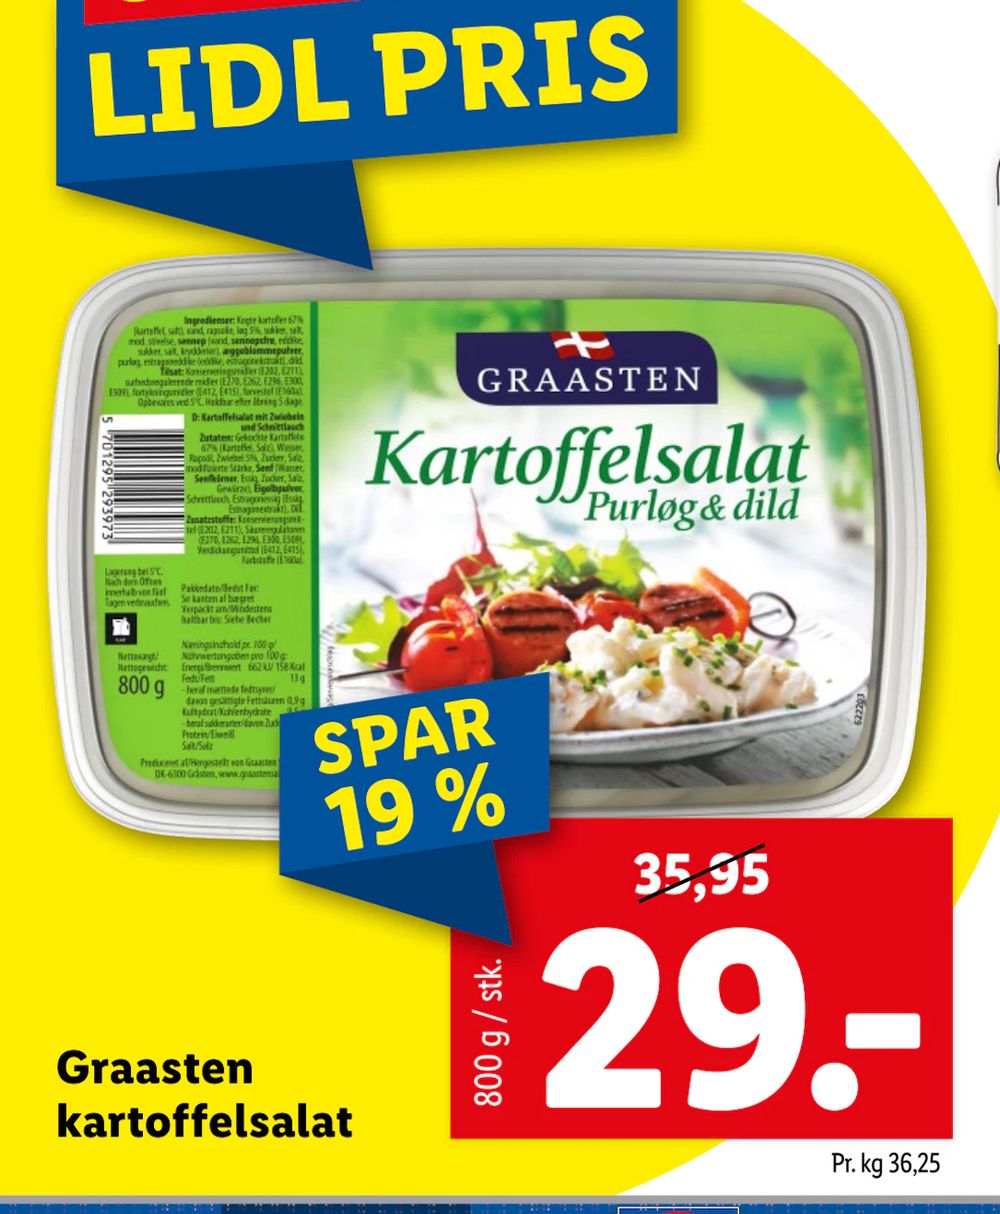 Tilbud på Graasten kartoffelsalat fra Lidl til 29 kr.